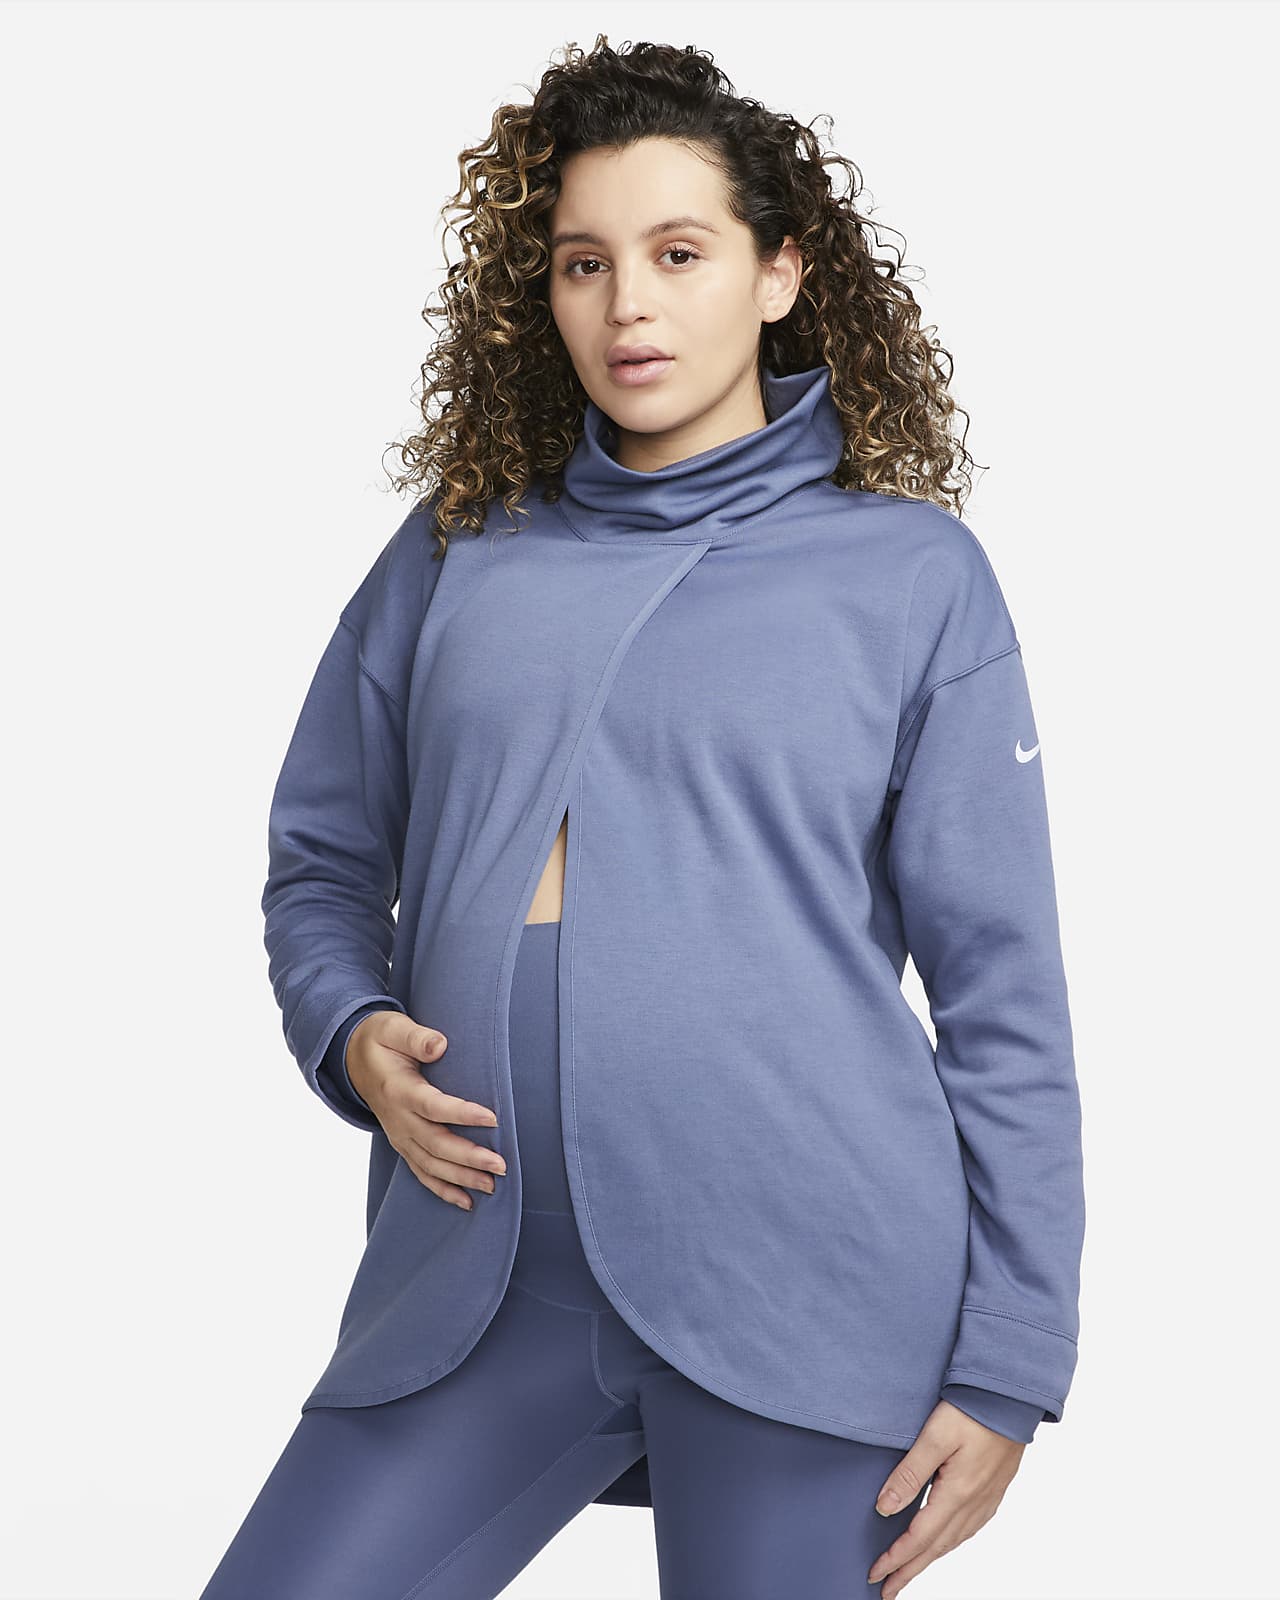 Γυναικείο φούτερ διπλής όψης Nike (M) (μητρότητας)